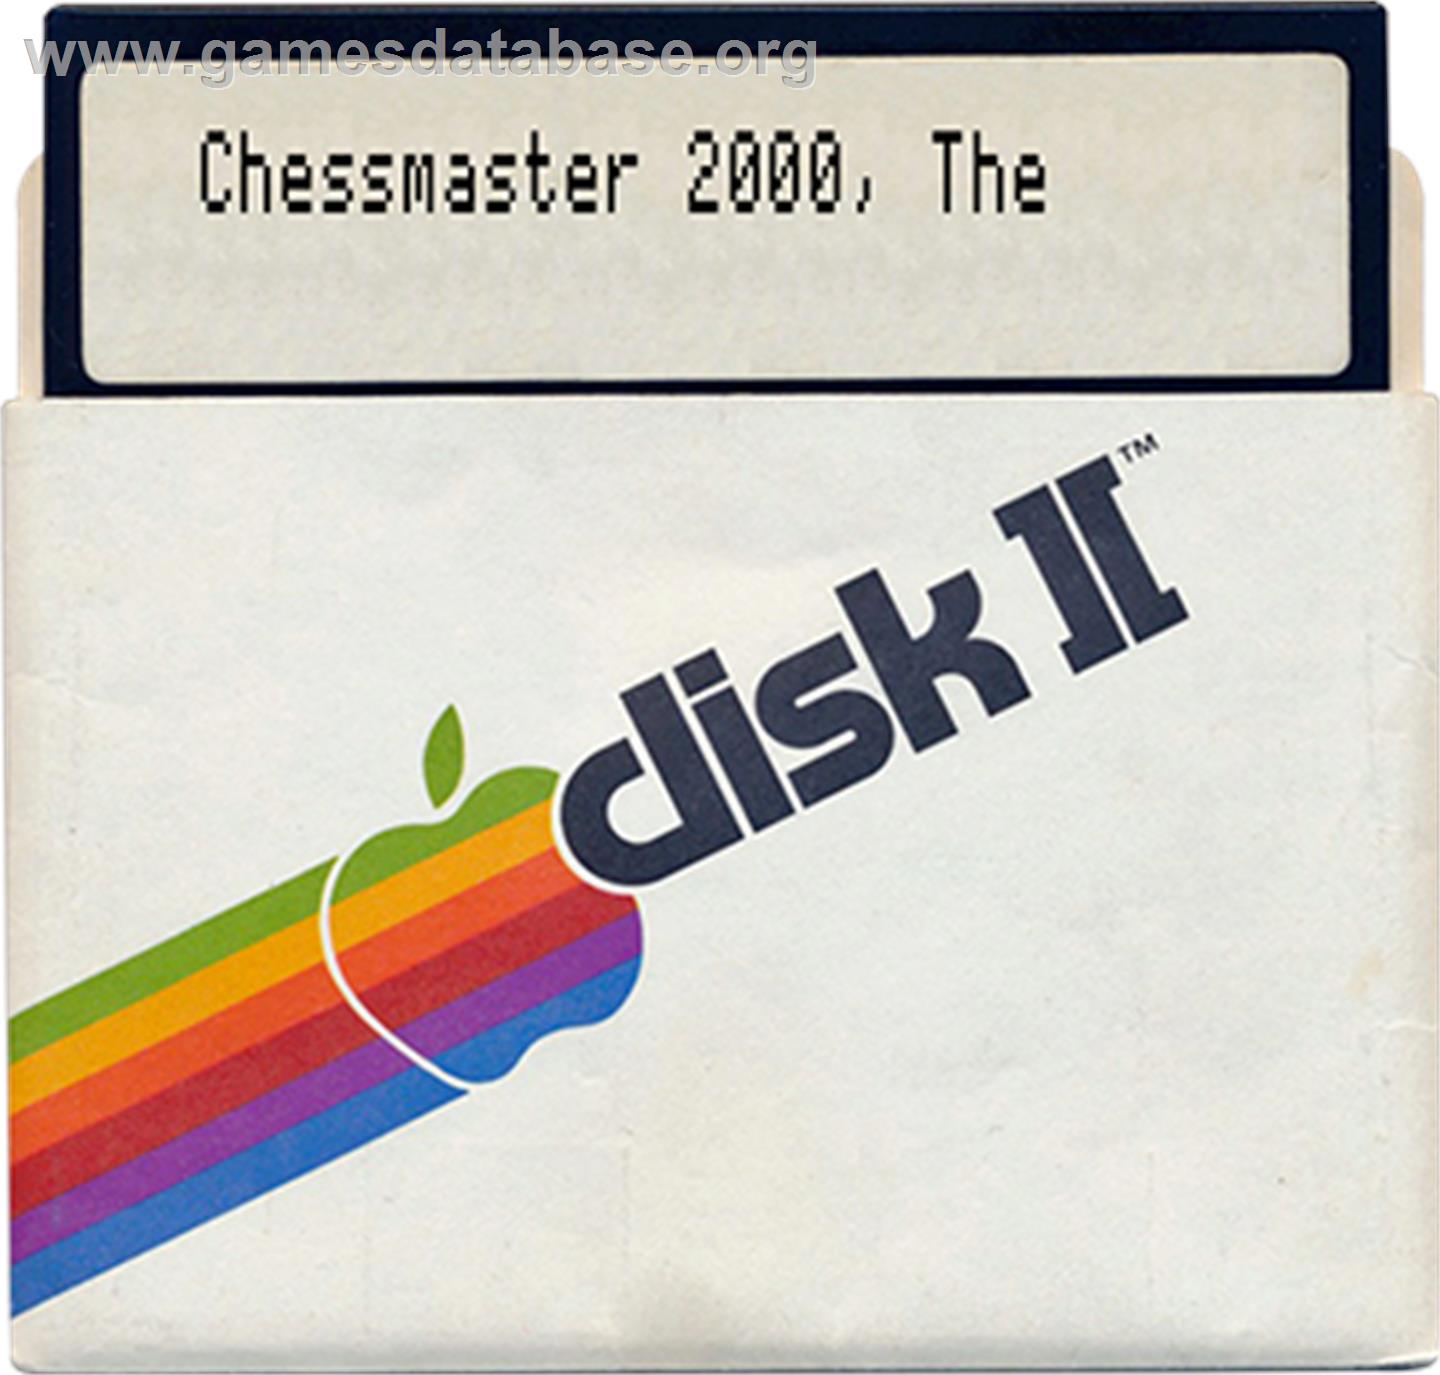 Chessmaster 2000 - Apple II - Artwork - Disc